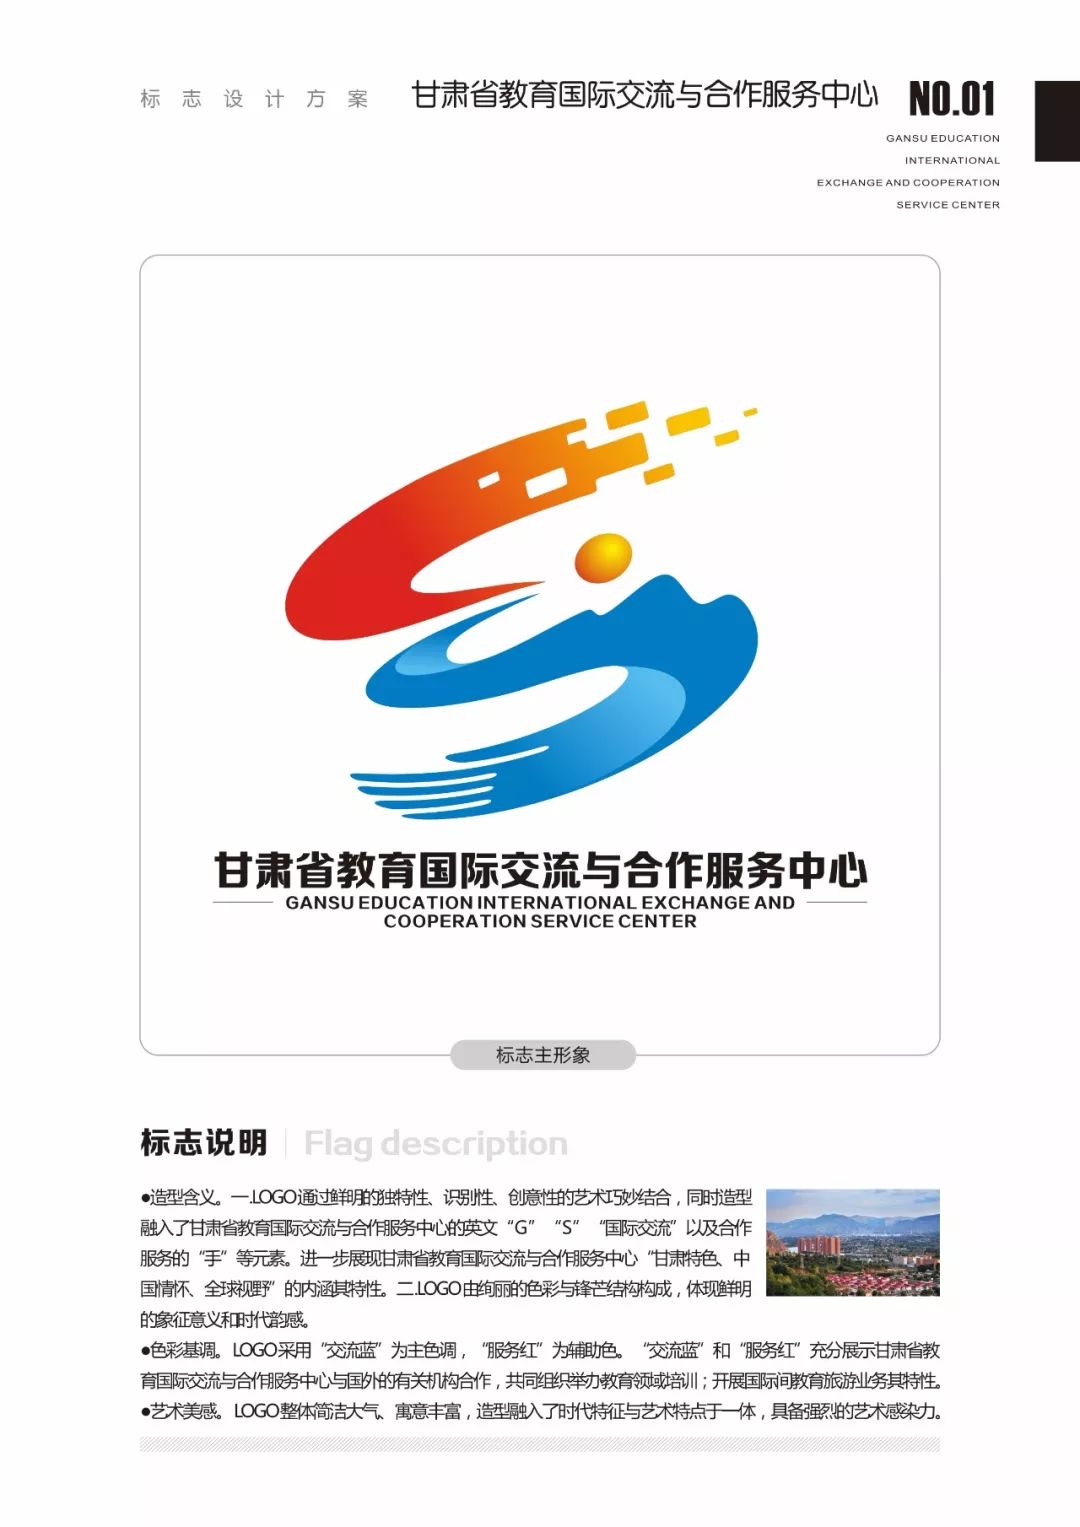 甘肃省教育国际交流与合作服务中心logo征集定了获奖作品公布